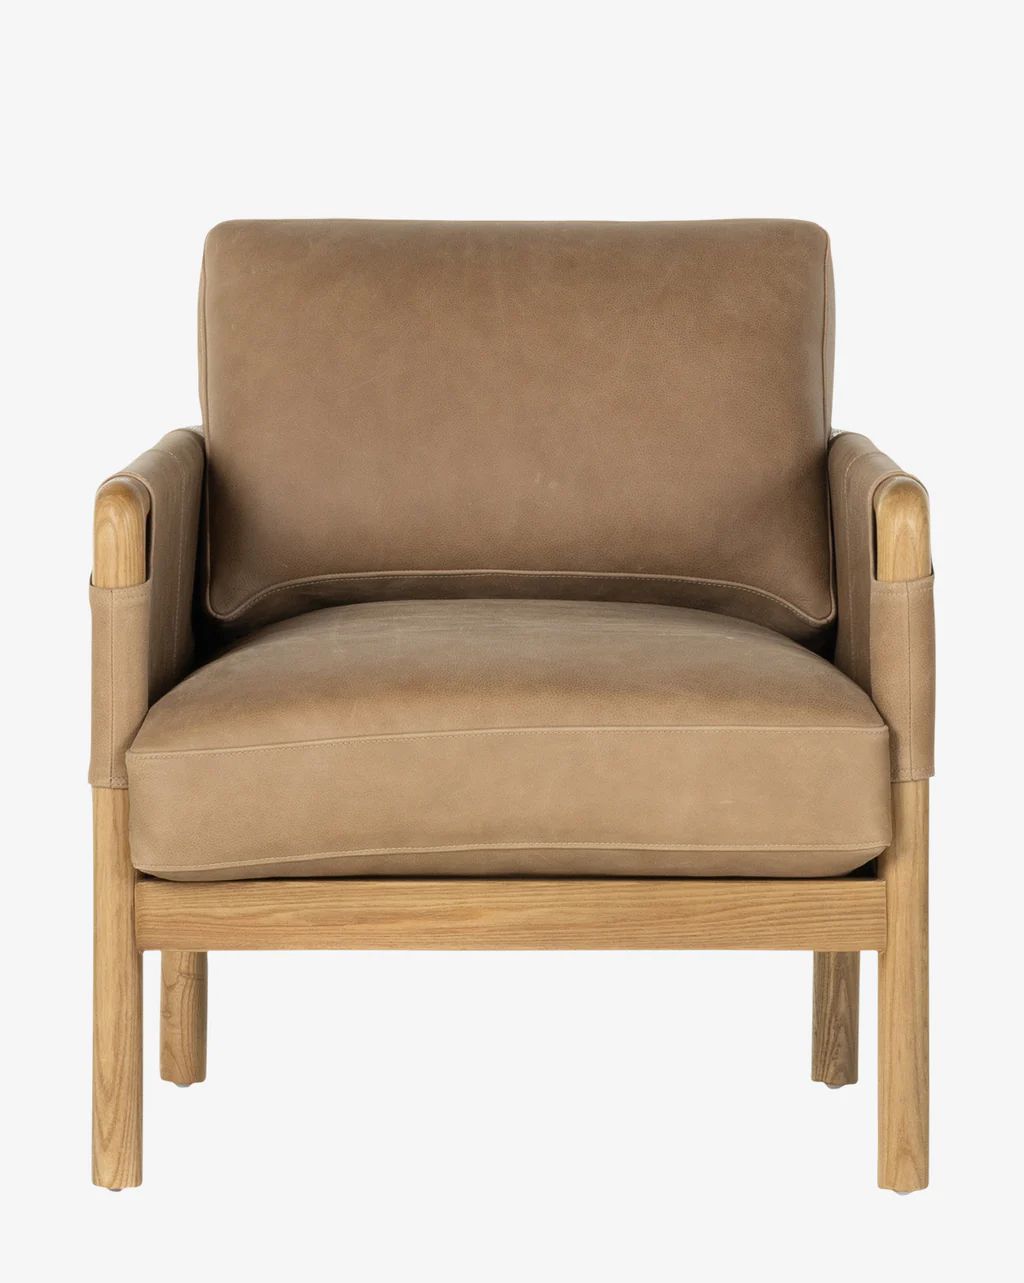 Cutler Chair | McGee & Co.